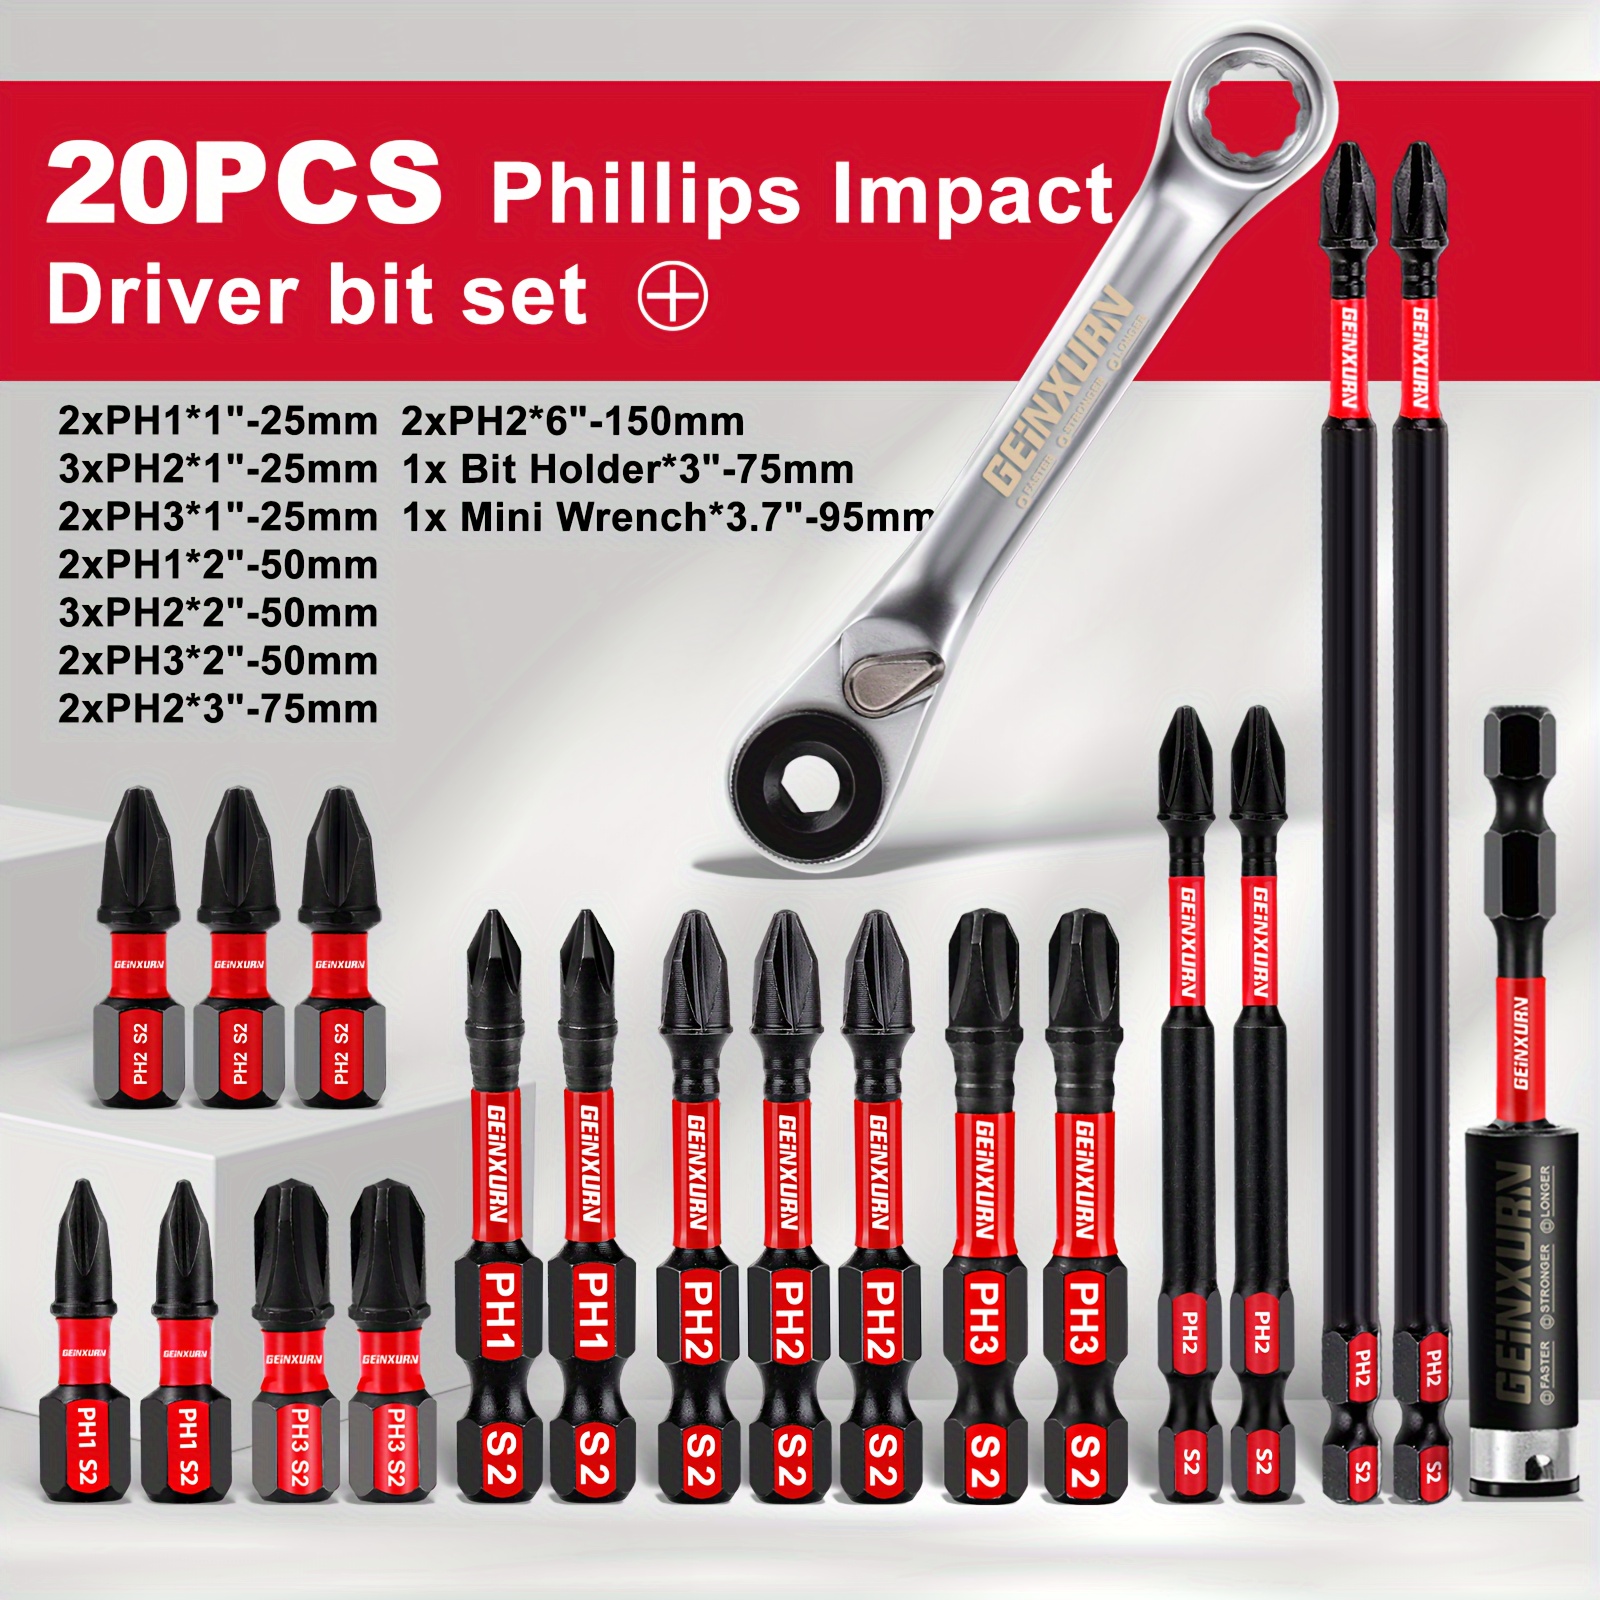 

Ensemble de 20 vis Phillips (2xPH1*25mm, 3xPH2*25mm, 2xPH3*25mm, 2xPH1*50mm, 3xPH2*50mm, 2xPH3*50mm, 2xPH2*75mm, 2xPH2*150mm, ), comprenant des tiges de connexion et des clés de petite taille